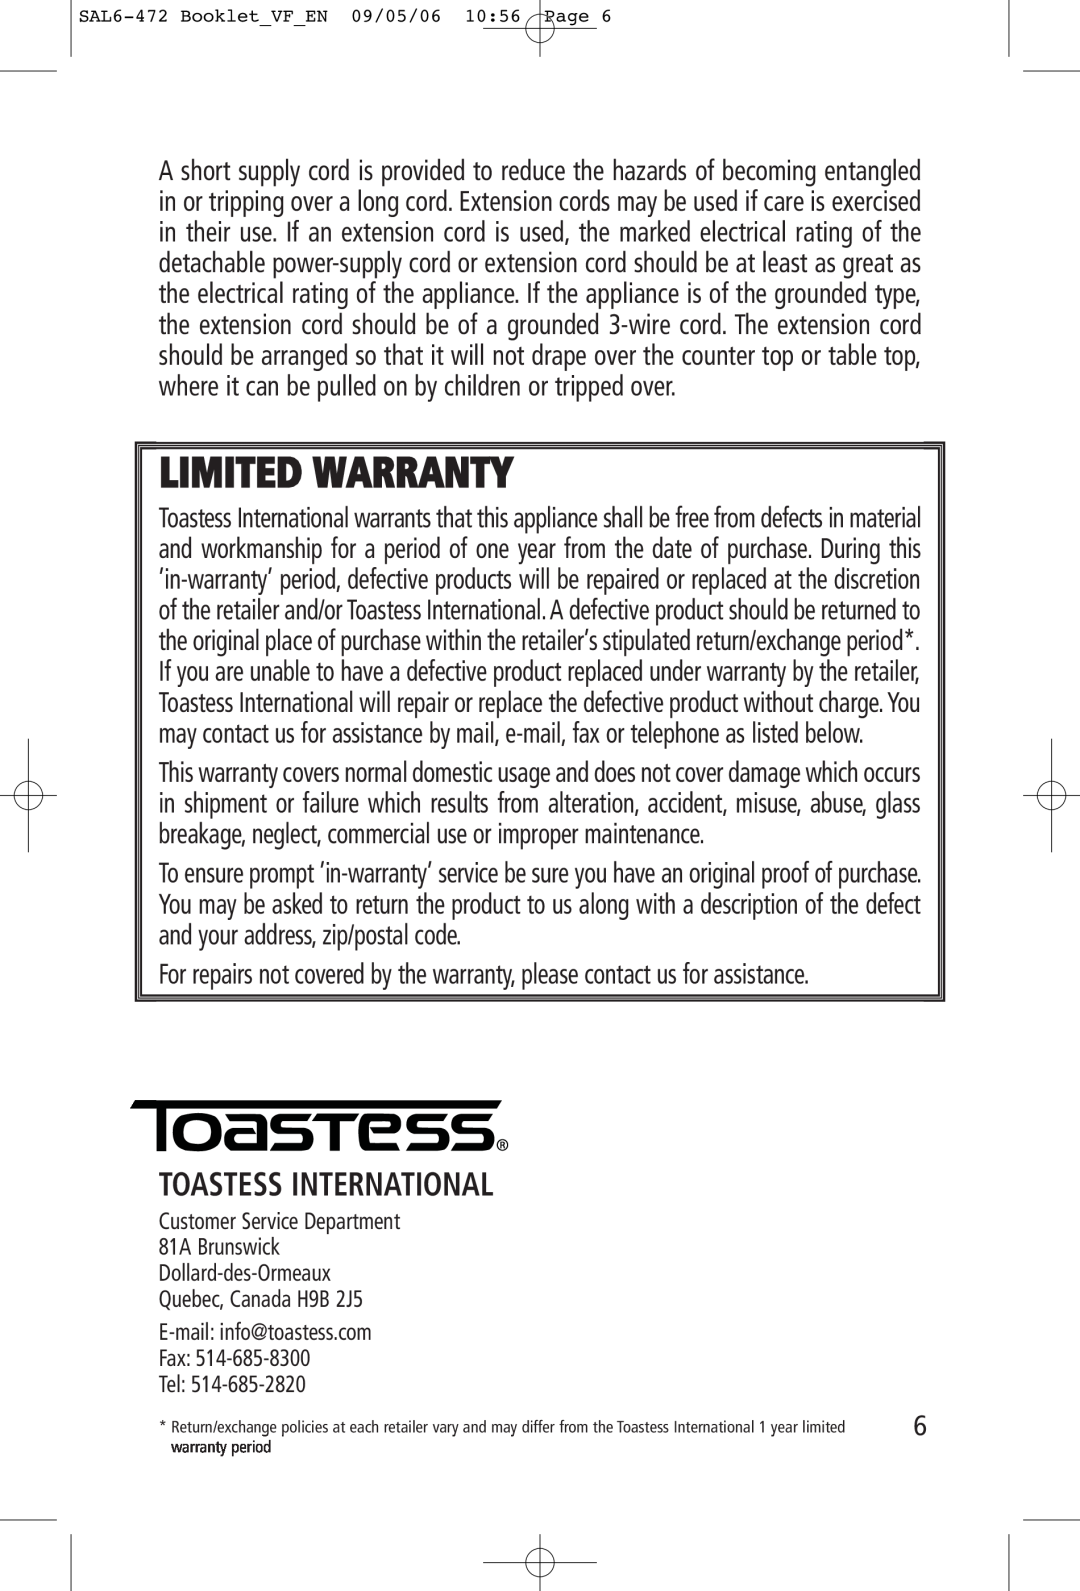 Toastess TFC-343 manual Toastess International, Limited Warranty 